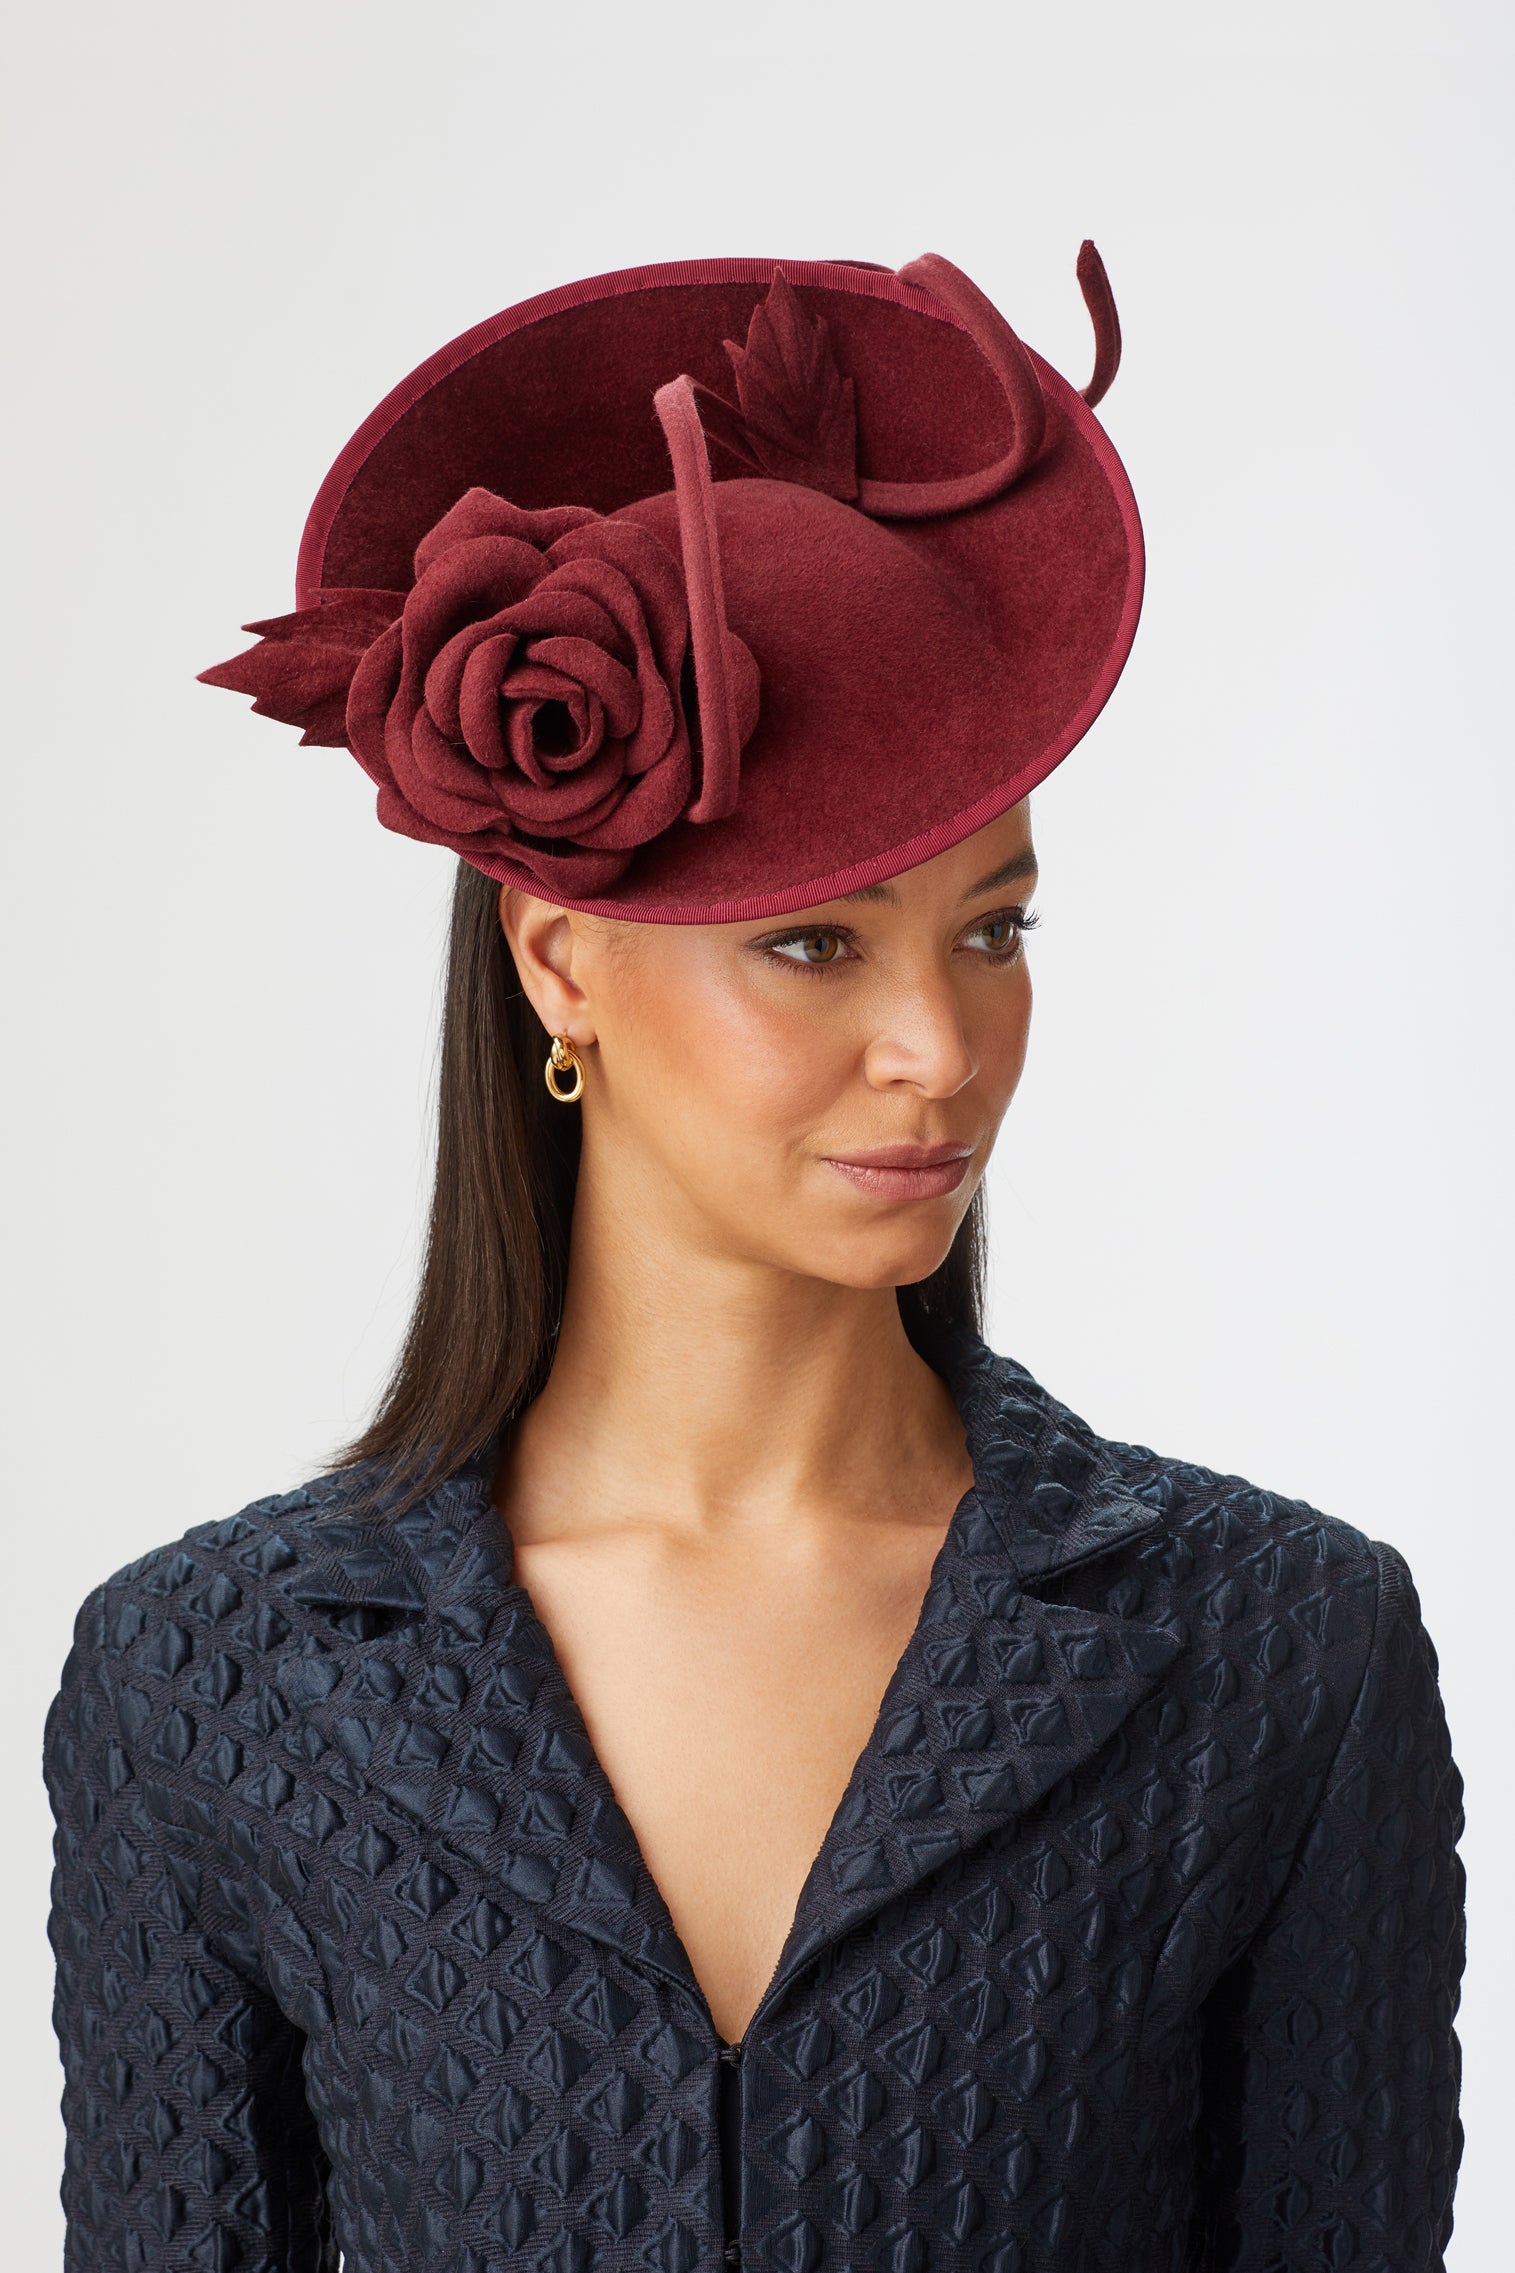 Belgravia Rose Hat - Kentucky Derby Hats for Women - Lock & Co. Hatters London UK